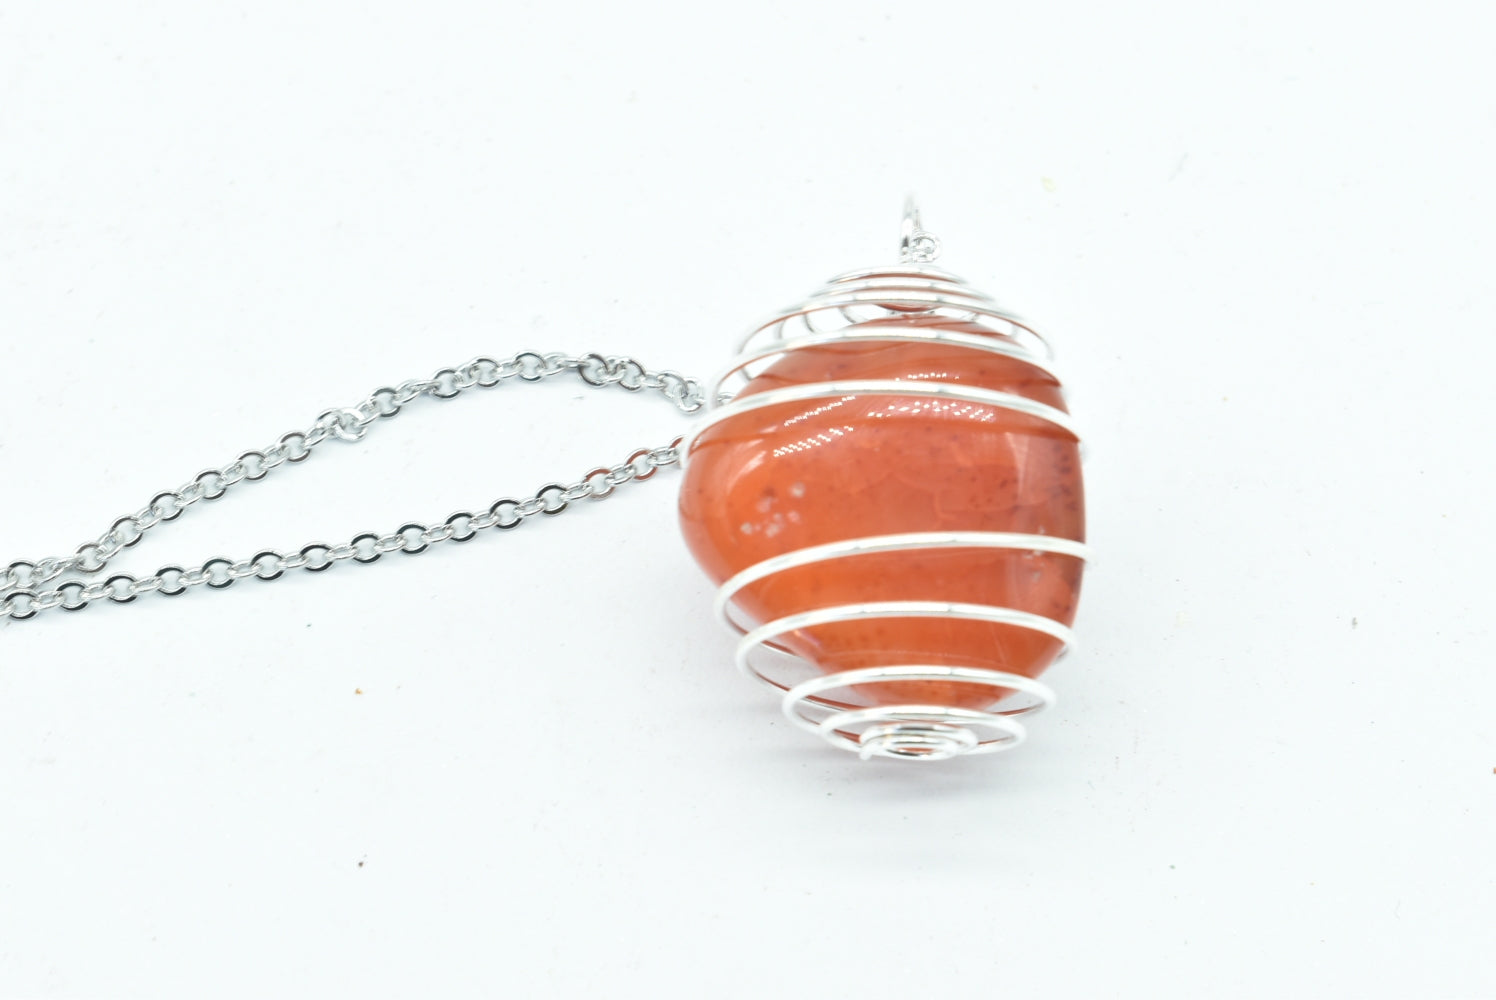 Carnelian stone pendant